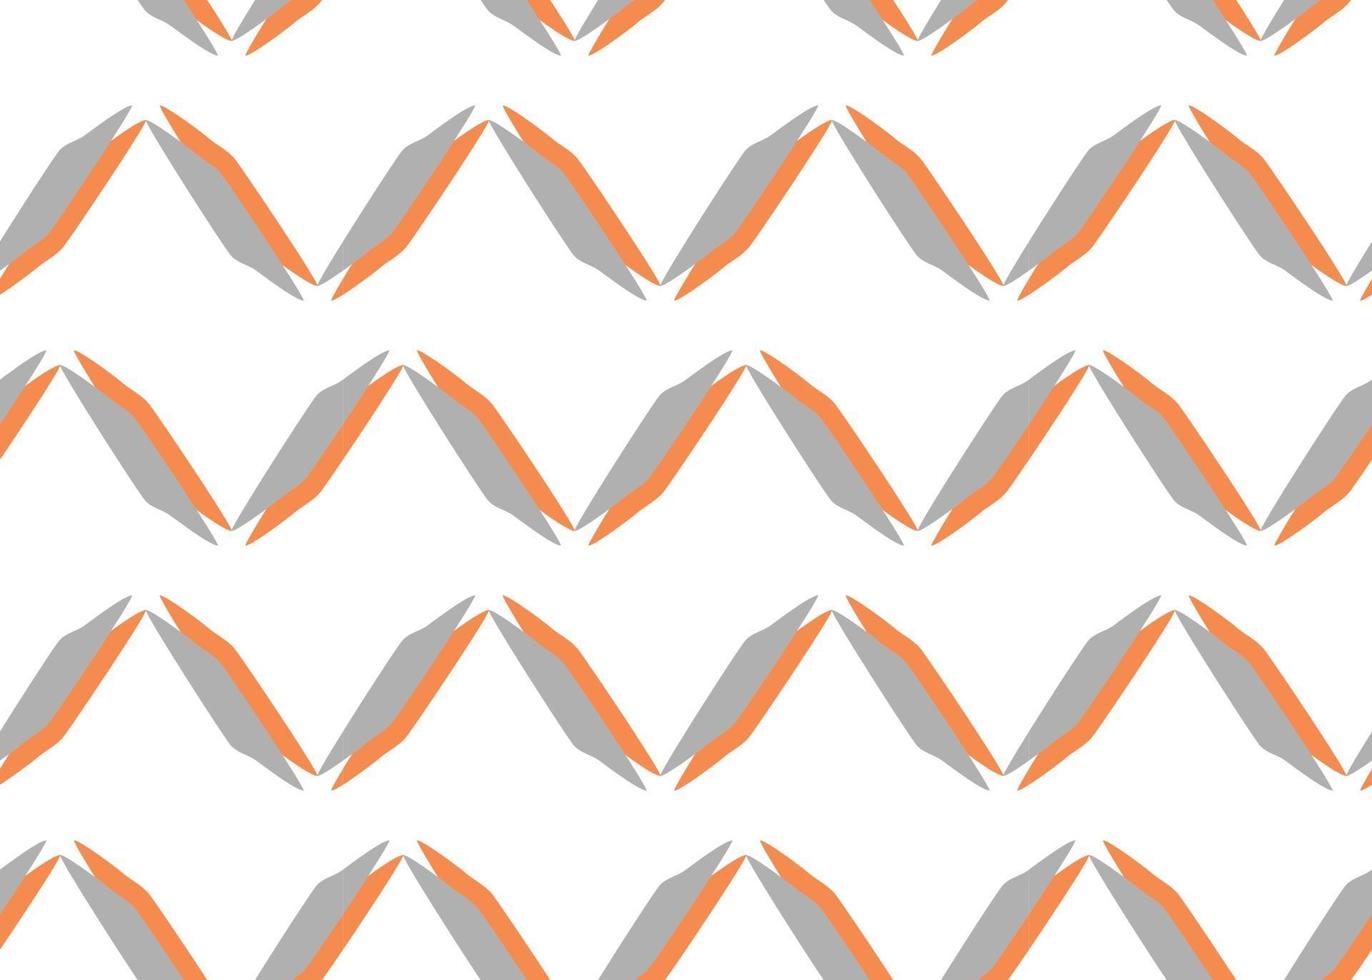 dibujado a mano, gris, naranja, blanco zig zag de patrones sin fisuras vector